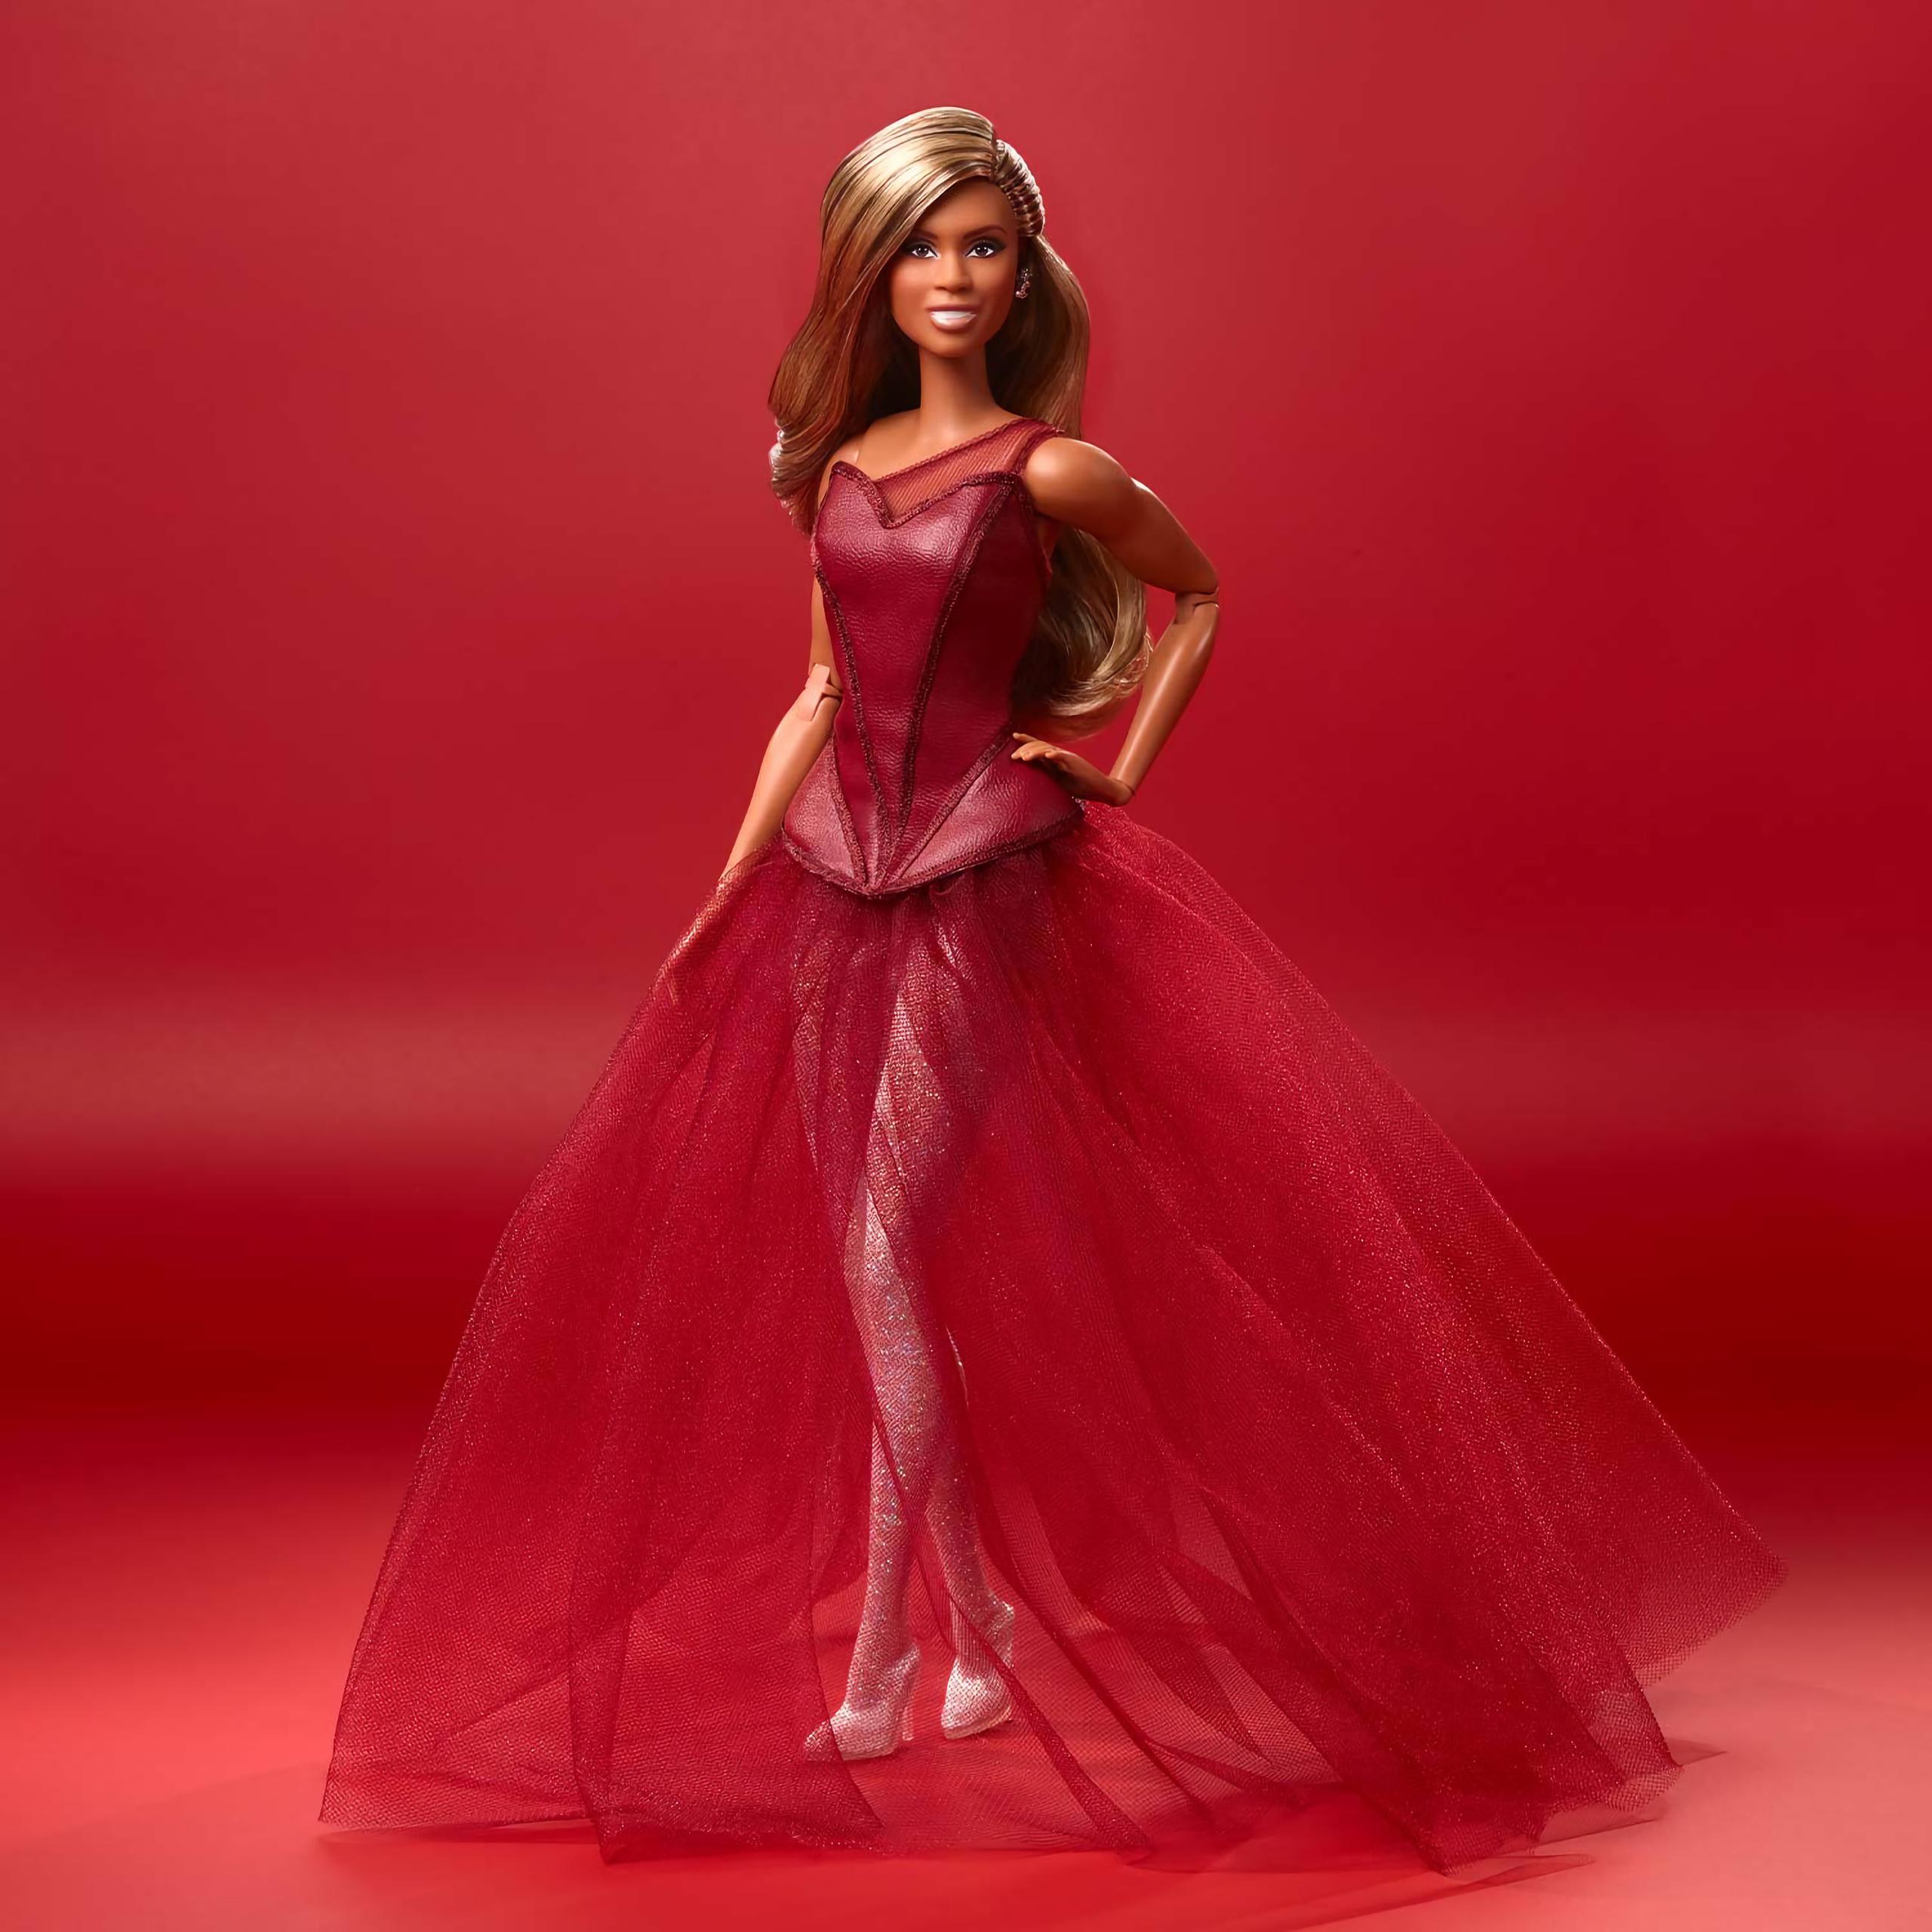 Fotografía cedida hoy por Mattel que muestra a la Barbie que rinde homenaje a la actriz Laverne Cox, la primera inspirada en una persona transexual de esta exitosa colección de muñecas, que cumplió 60 años en 2019. EFE/Mattel